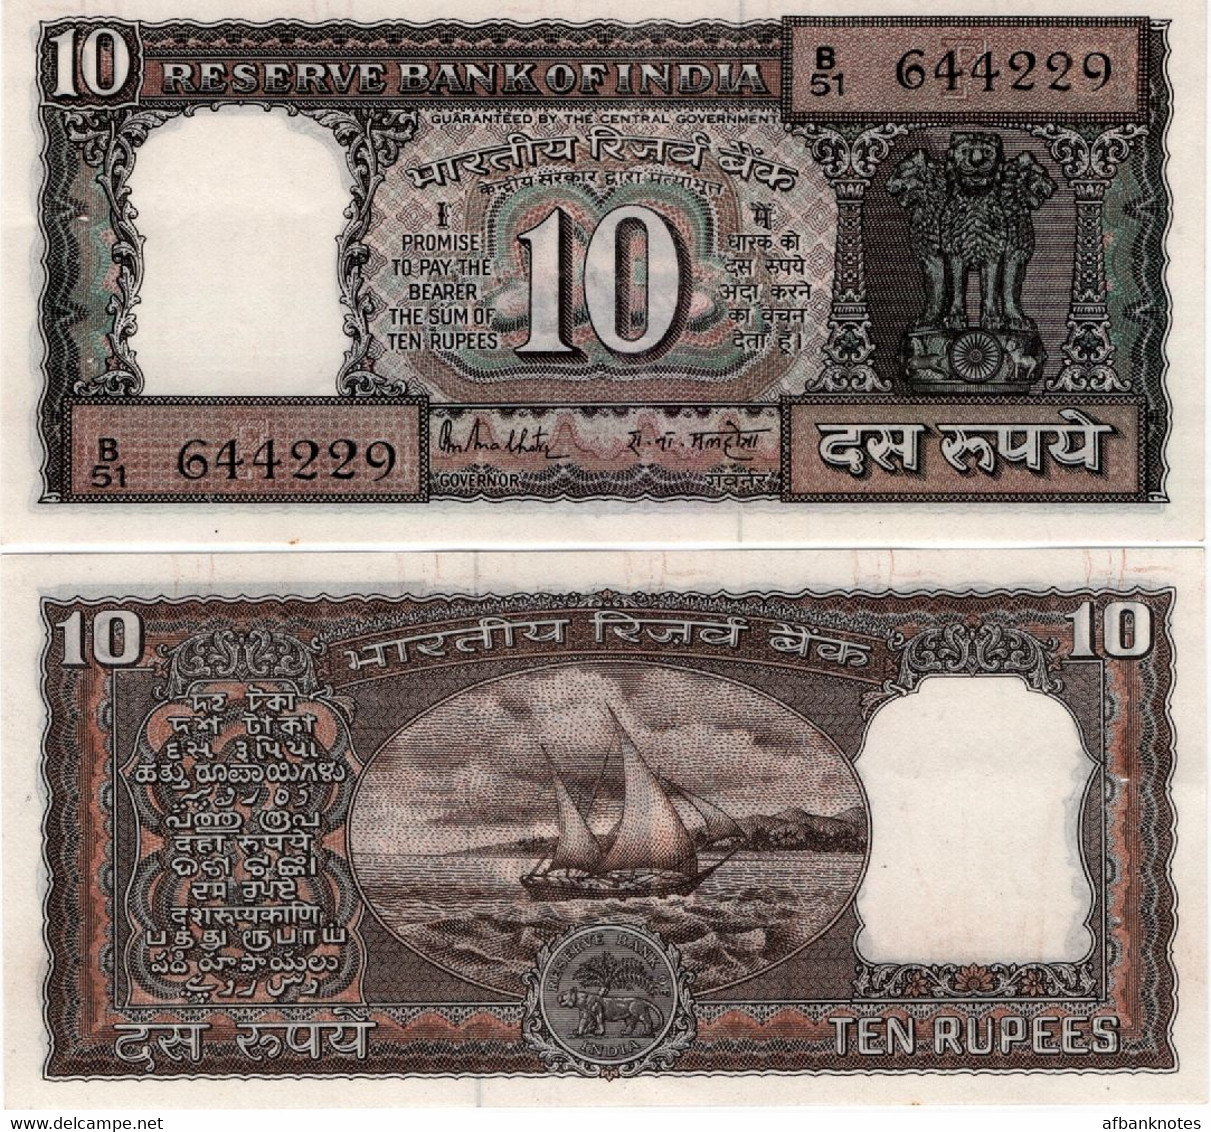 INDIA       10 Rupees       P-60k       ND (ca. 1987)       UNC  [staple Holes] - Inde